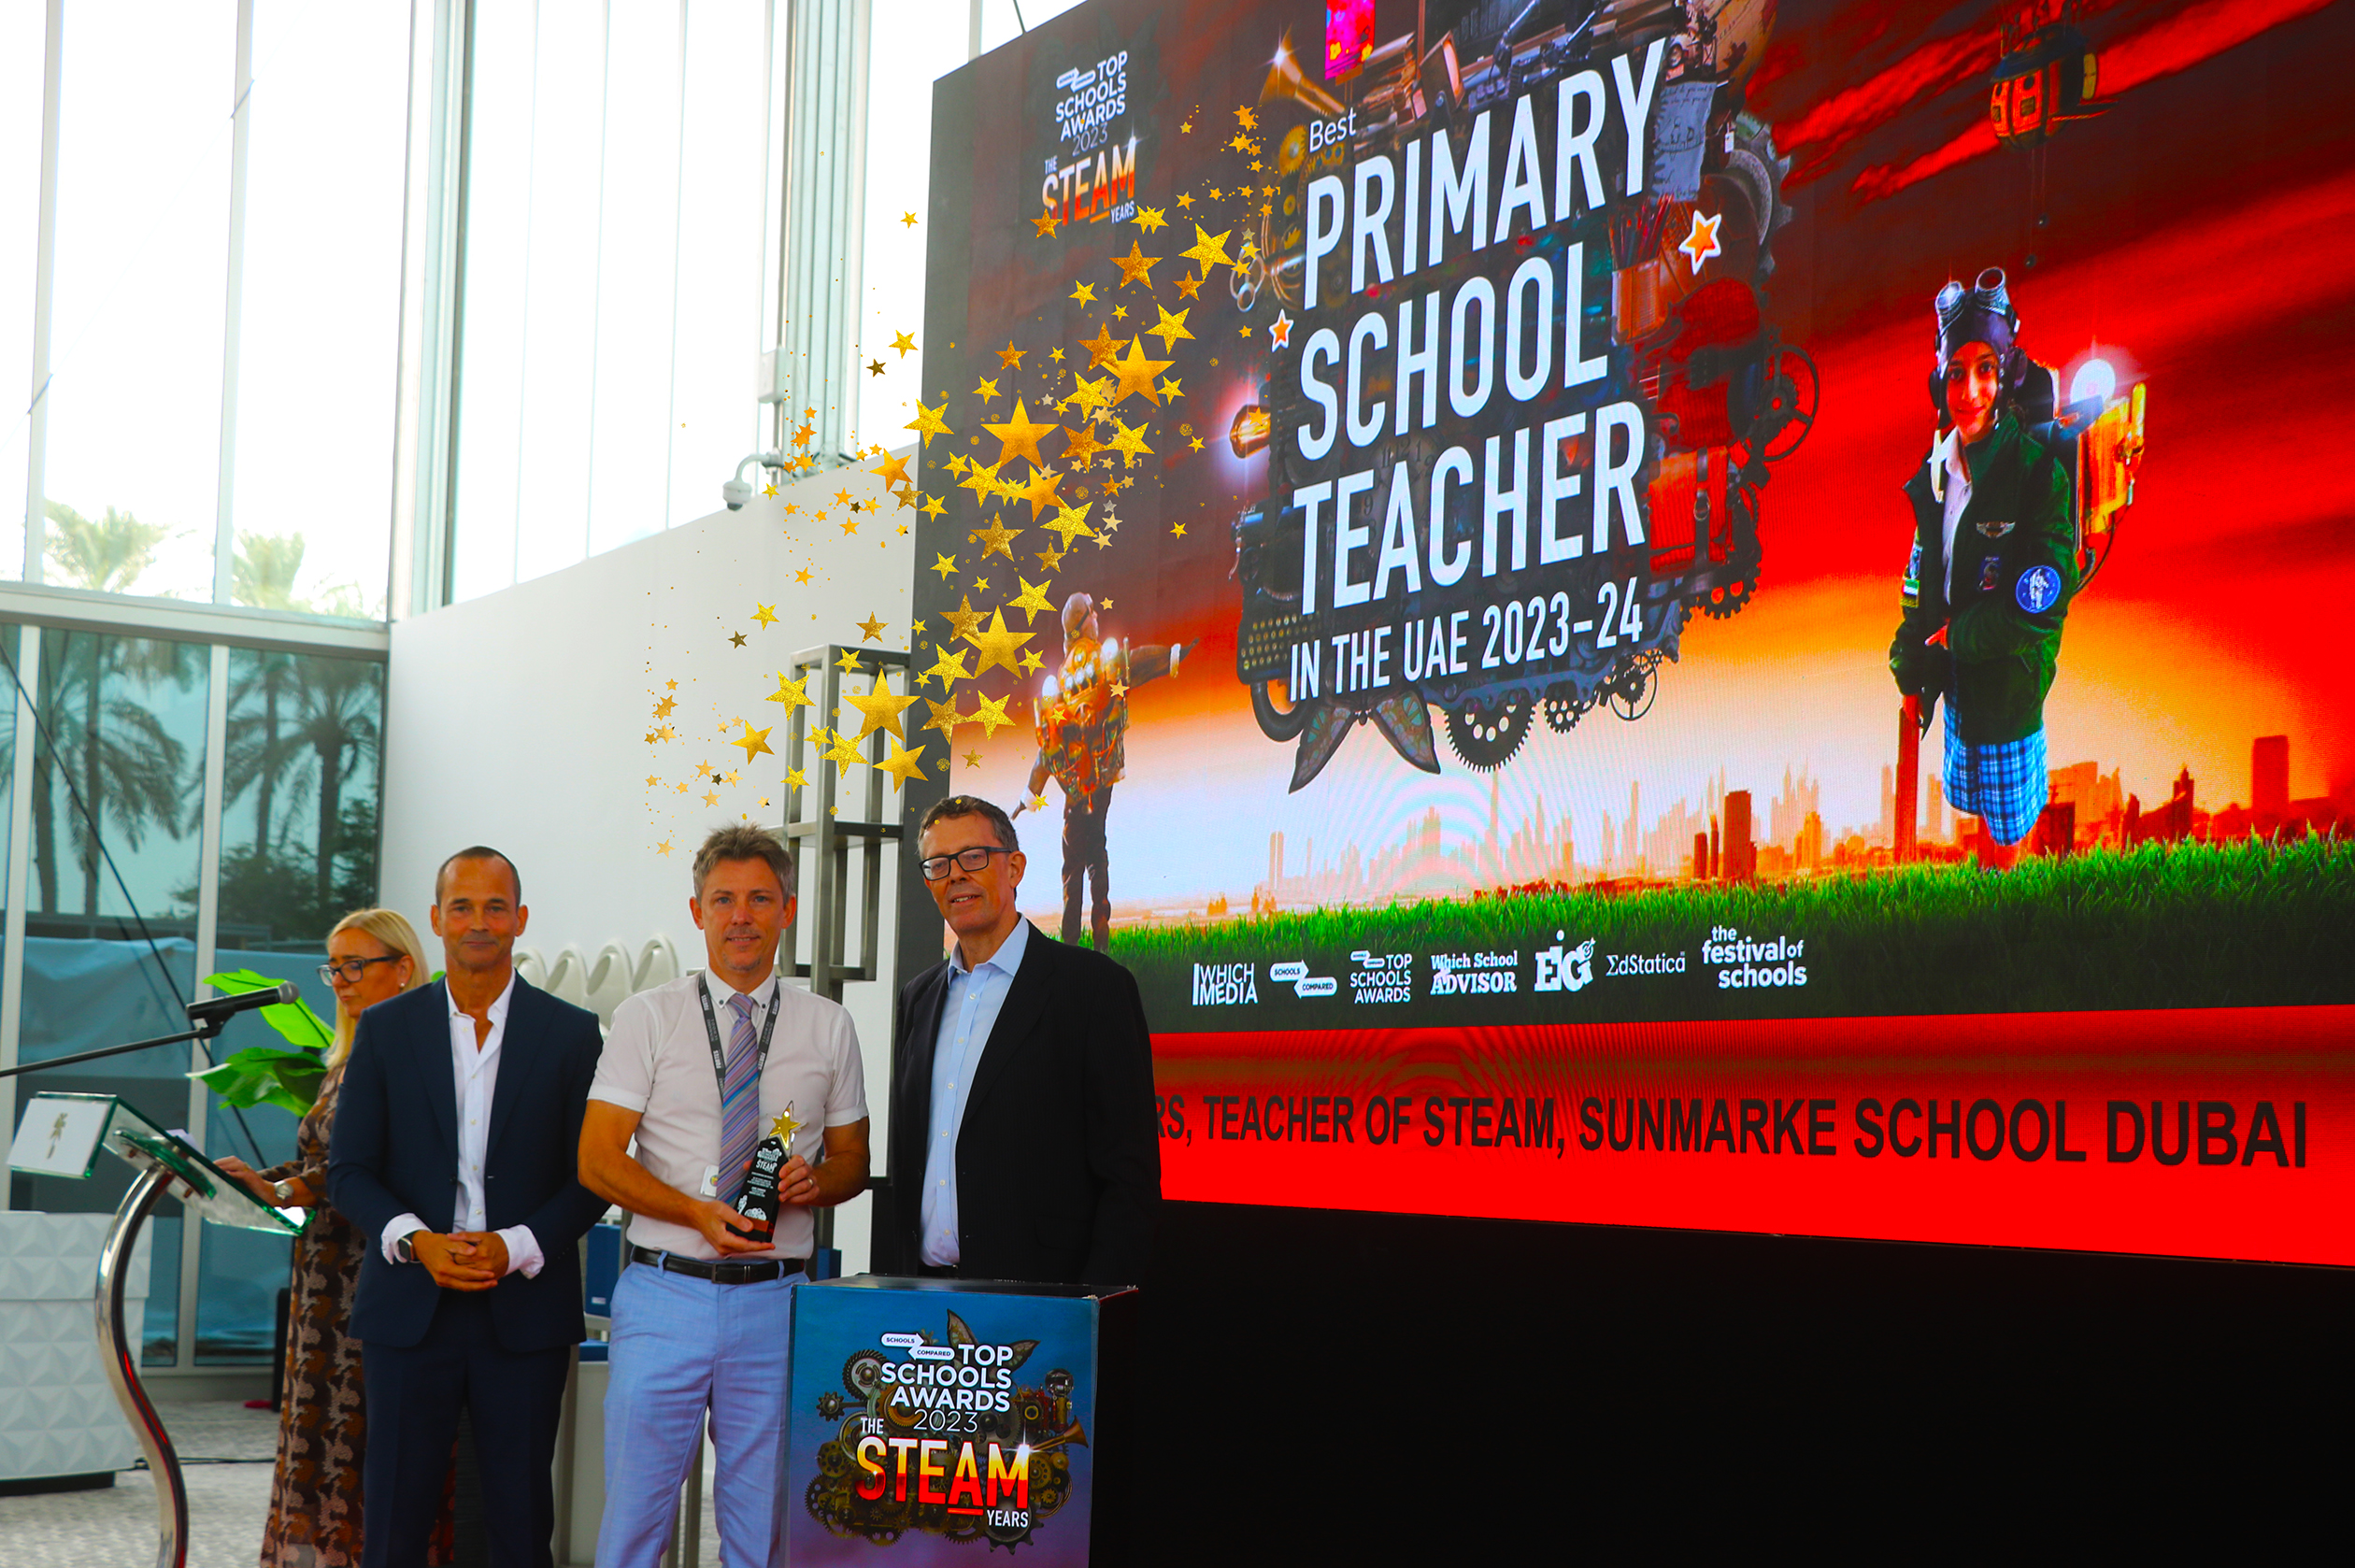 Jamie Summers wurde für seinen außergewöhnlichen Unterricht in STEAM an der Sunmarke School in Dubai mit dem Top Schools Award als bester Grundschullehrer in den Vereinigten Arabischen Emiraten ausgezeichnet